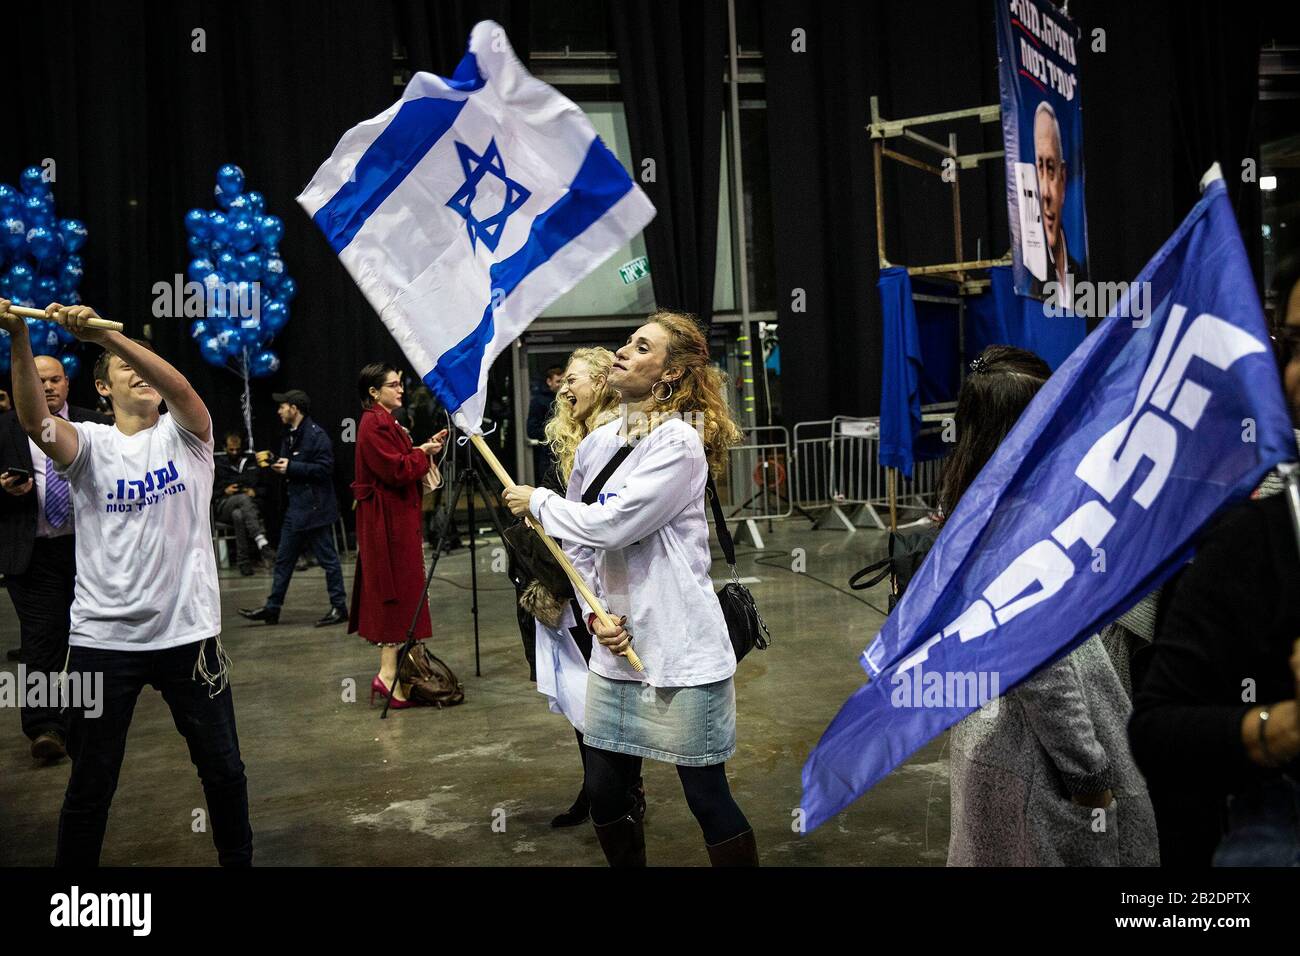 Tel Aviv, Israele. 02nd Mar, 2020. I sostenitori del partito di Likud reagiscono ai sondaggi d'uscita delle elezioni parlamentari israeliane, presso la sede del partito. Il partito di Likud del primo ministro israeliano Benjamin Netanyahu ha vinto il maggior numero di seggi (36-37) nelle elezioni parlamentari, ma il suo blocco di destra e di partito religioso non ha maggioranza nel parlamento del paese a 120 posti, secondo i sondaggi d'uscita. Credit: Ilia Yefimovic/Dpa/Alamy Live News Foto Stock